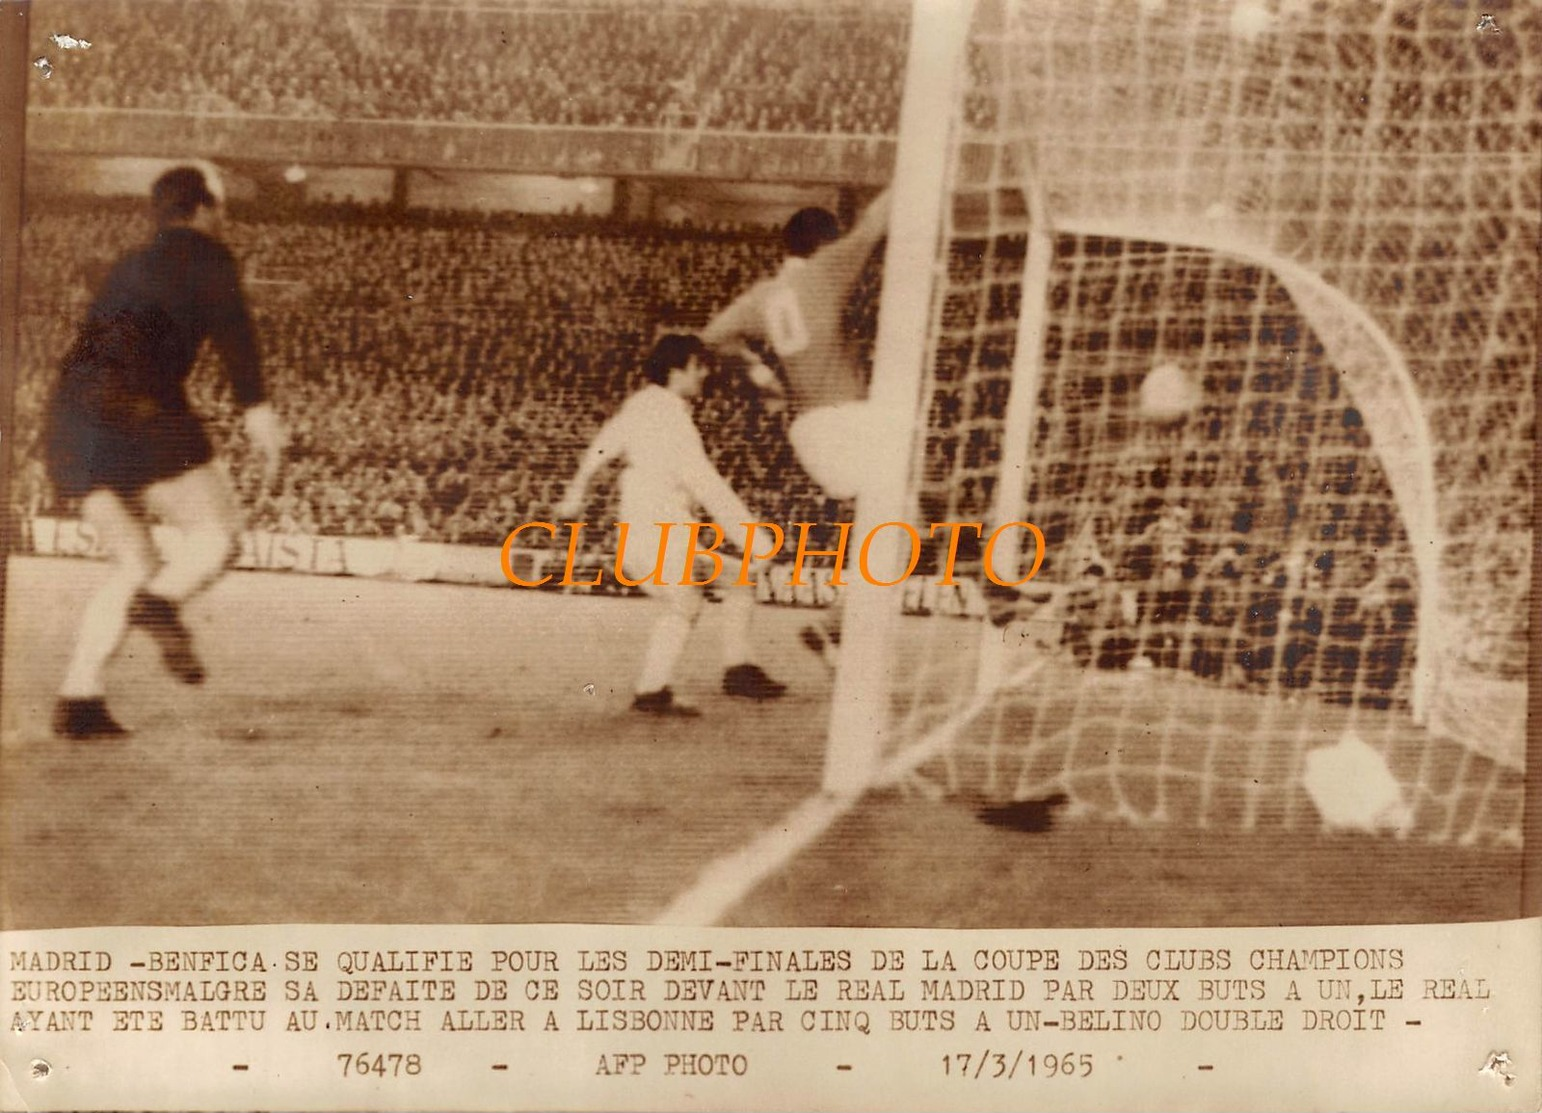 GRANDE PHOTO : FOOTBALL - MADRID BENFICA SE QUALIFIE EN DEMI FINALES DE LA COUPE DES CLUBES 1965 -  FOOT SOCCER - Sports